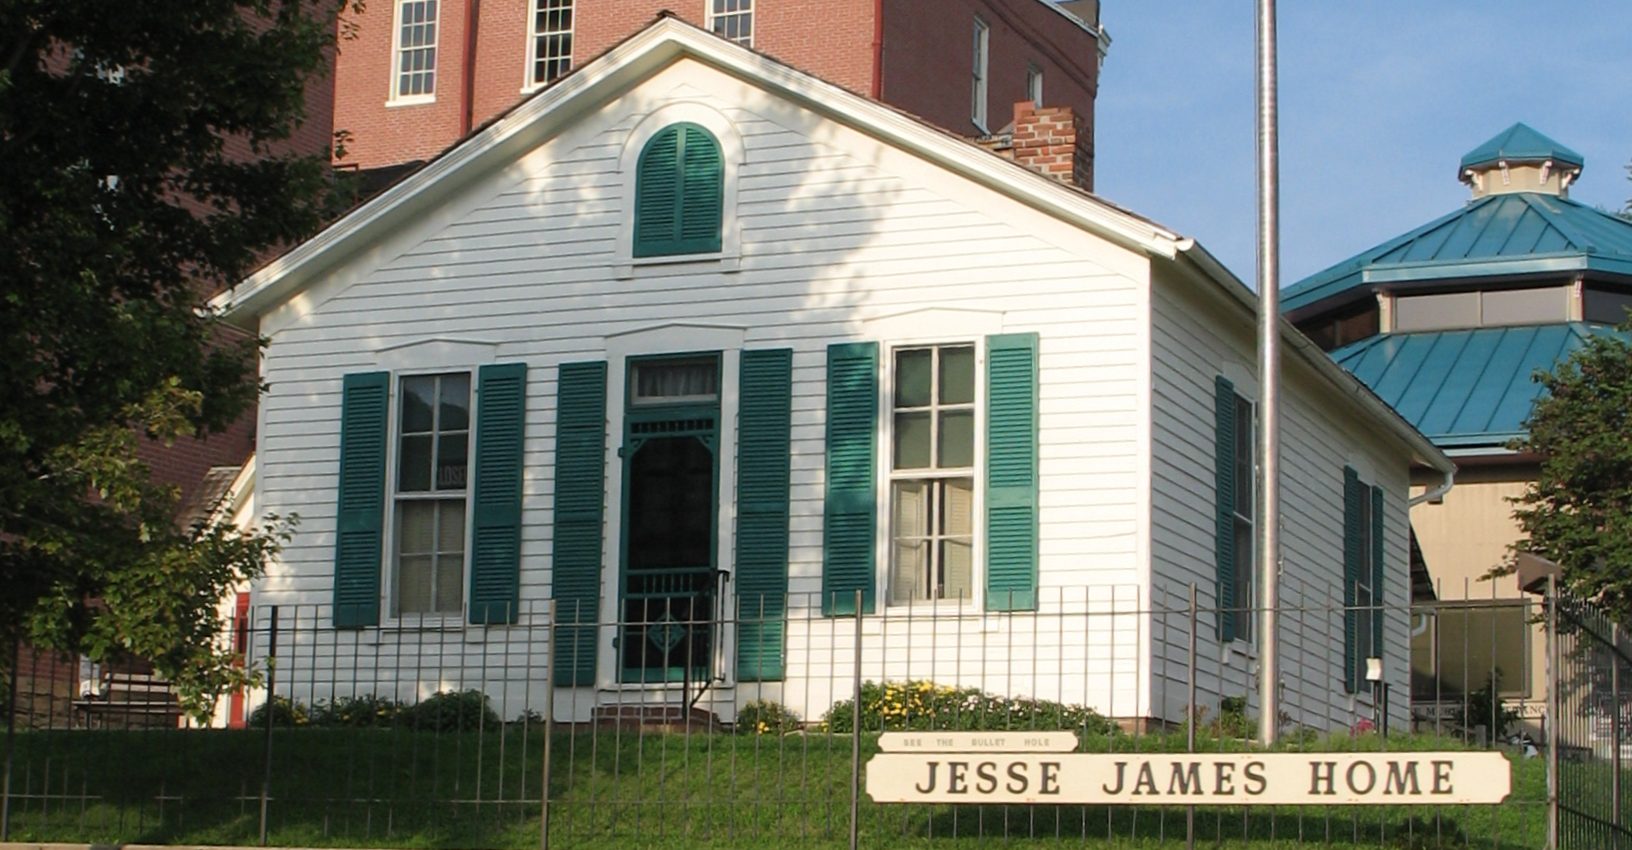 Jesse James utolsó háza, itt lőtte fültövön a 19 éves Robert Ford.